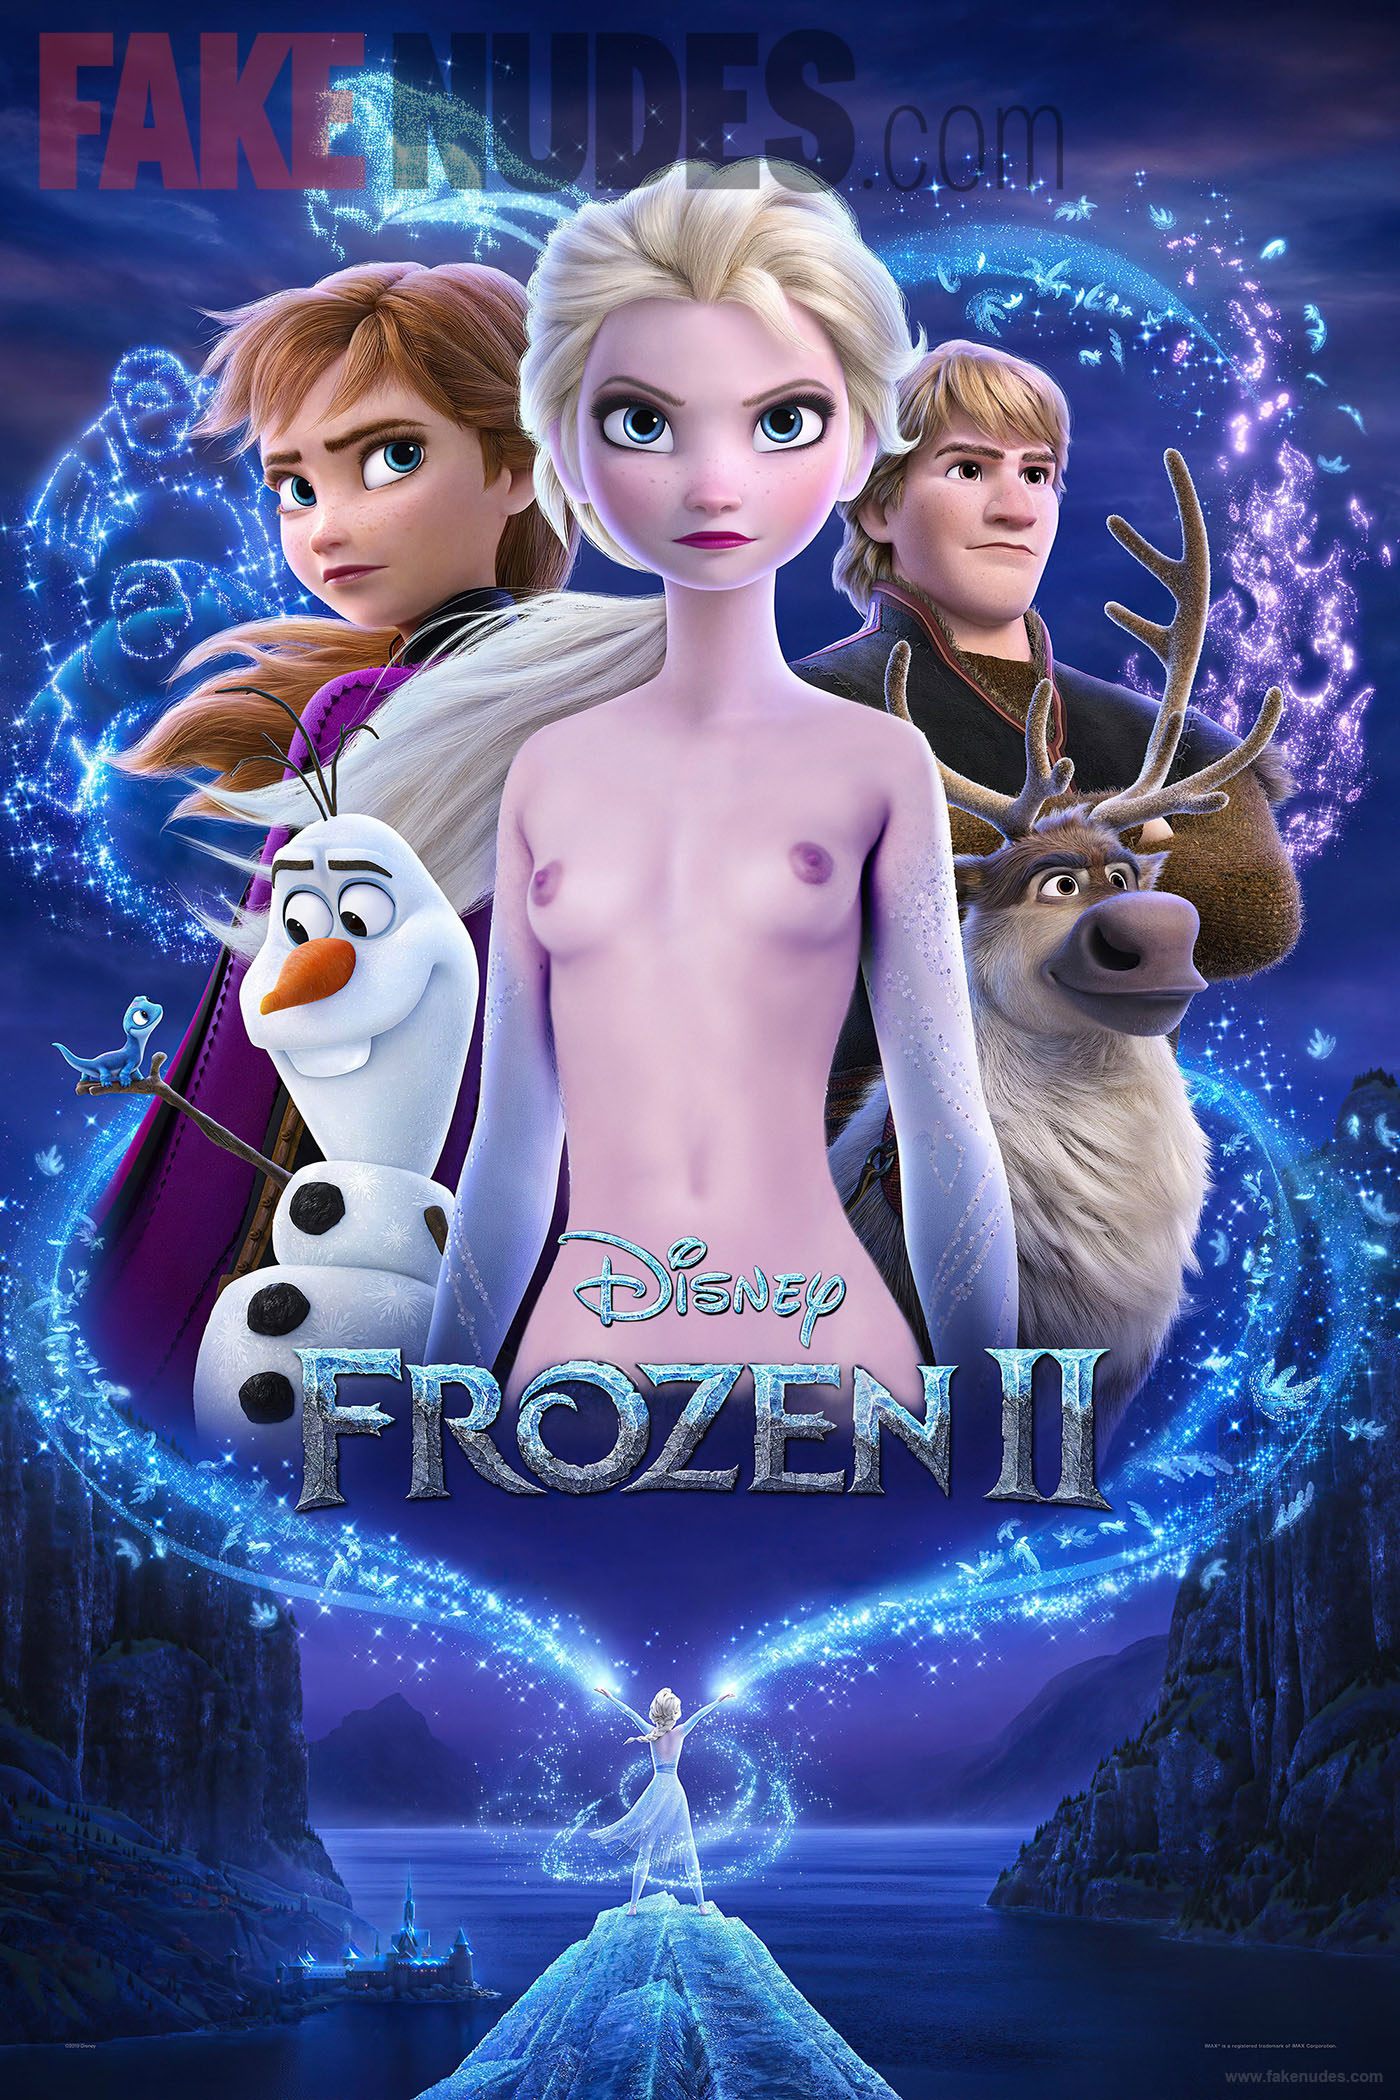 Frozen Elsa Naked Porn - Frozen 2 Trailer Has Fans Convinced That Elsa Is An Exhibitionist -  FakeNudes.com